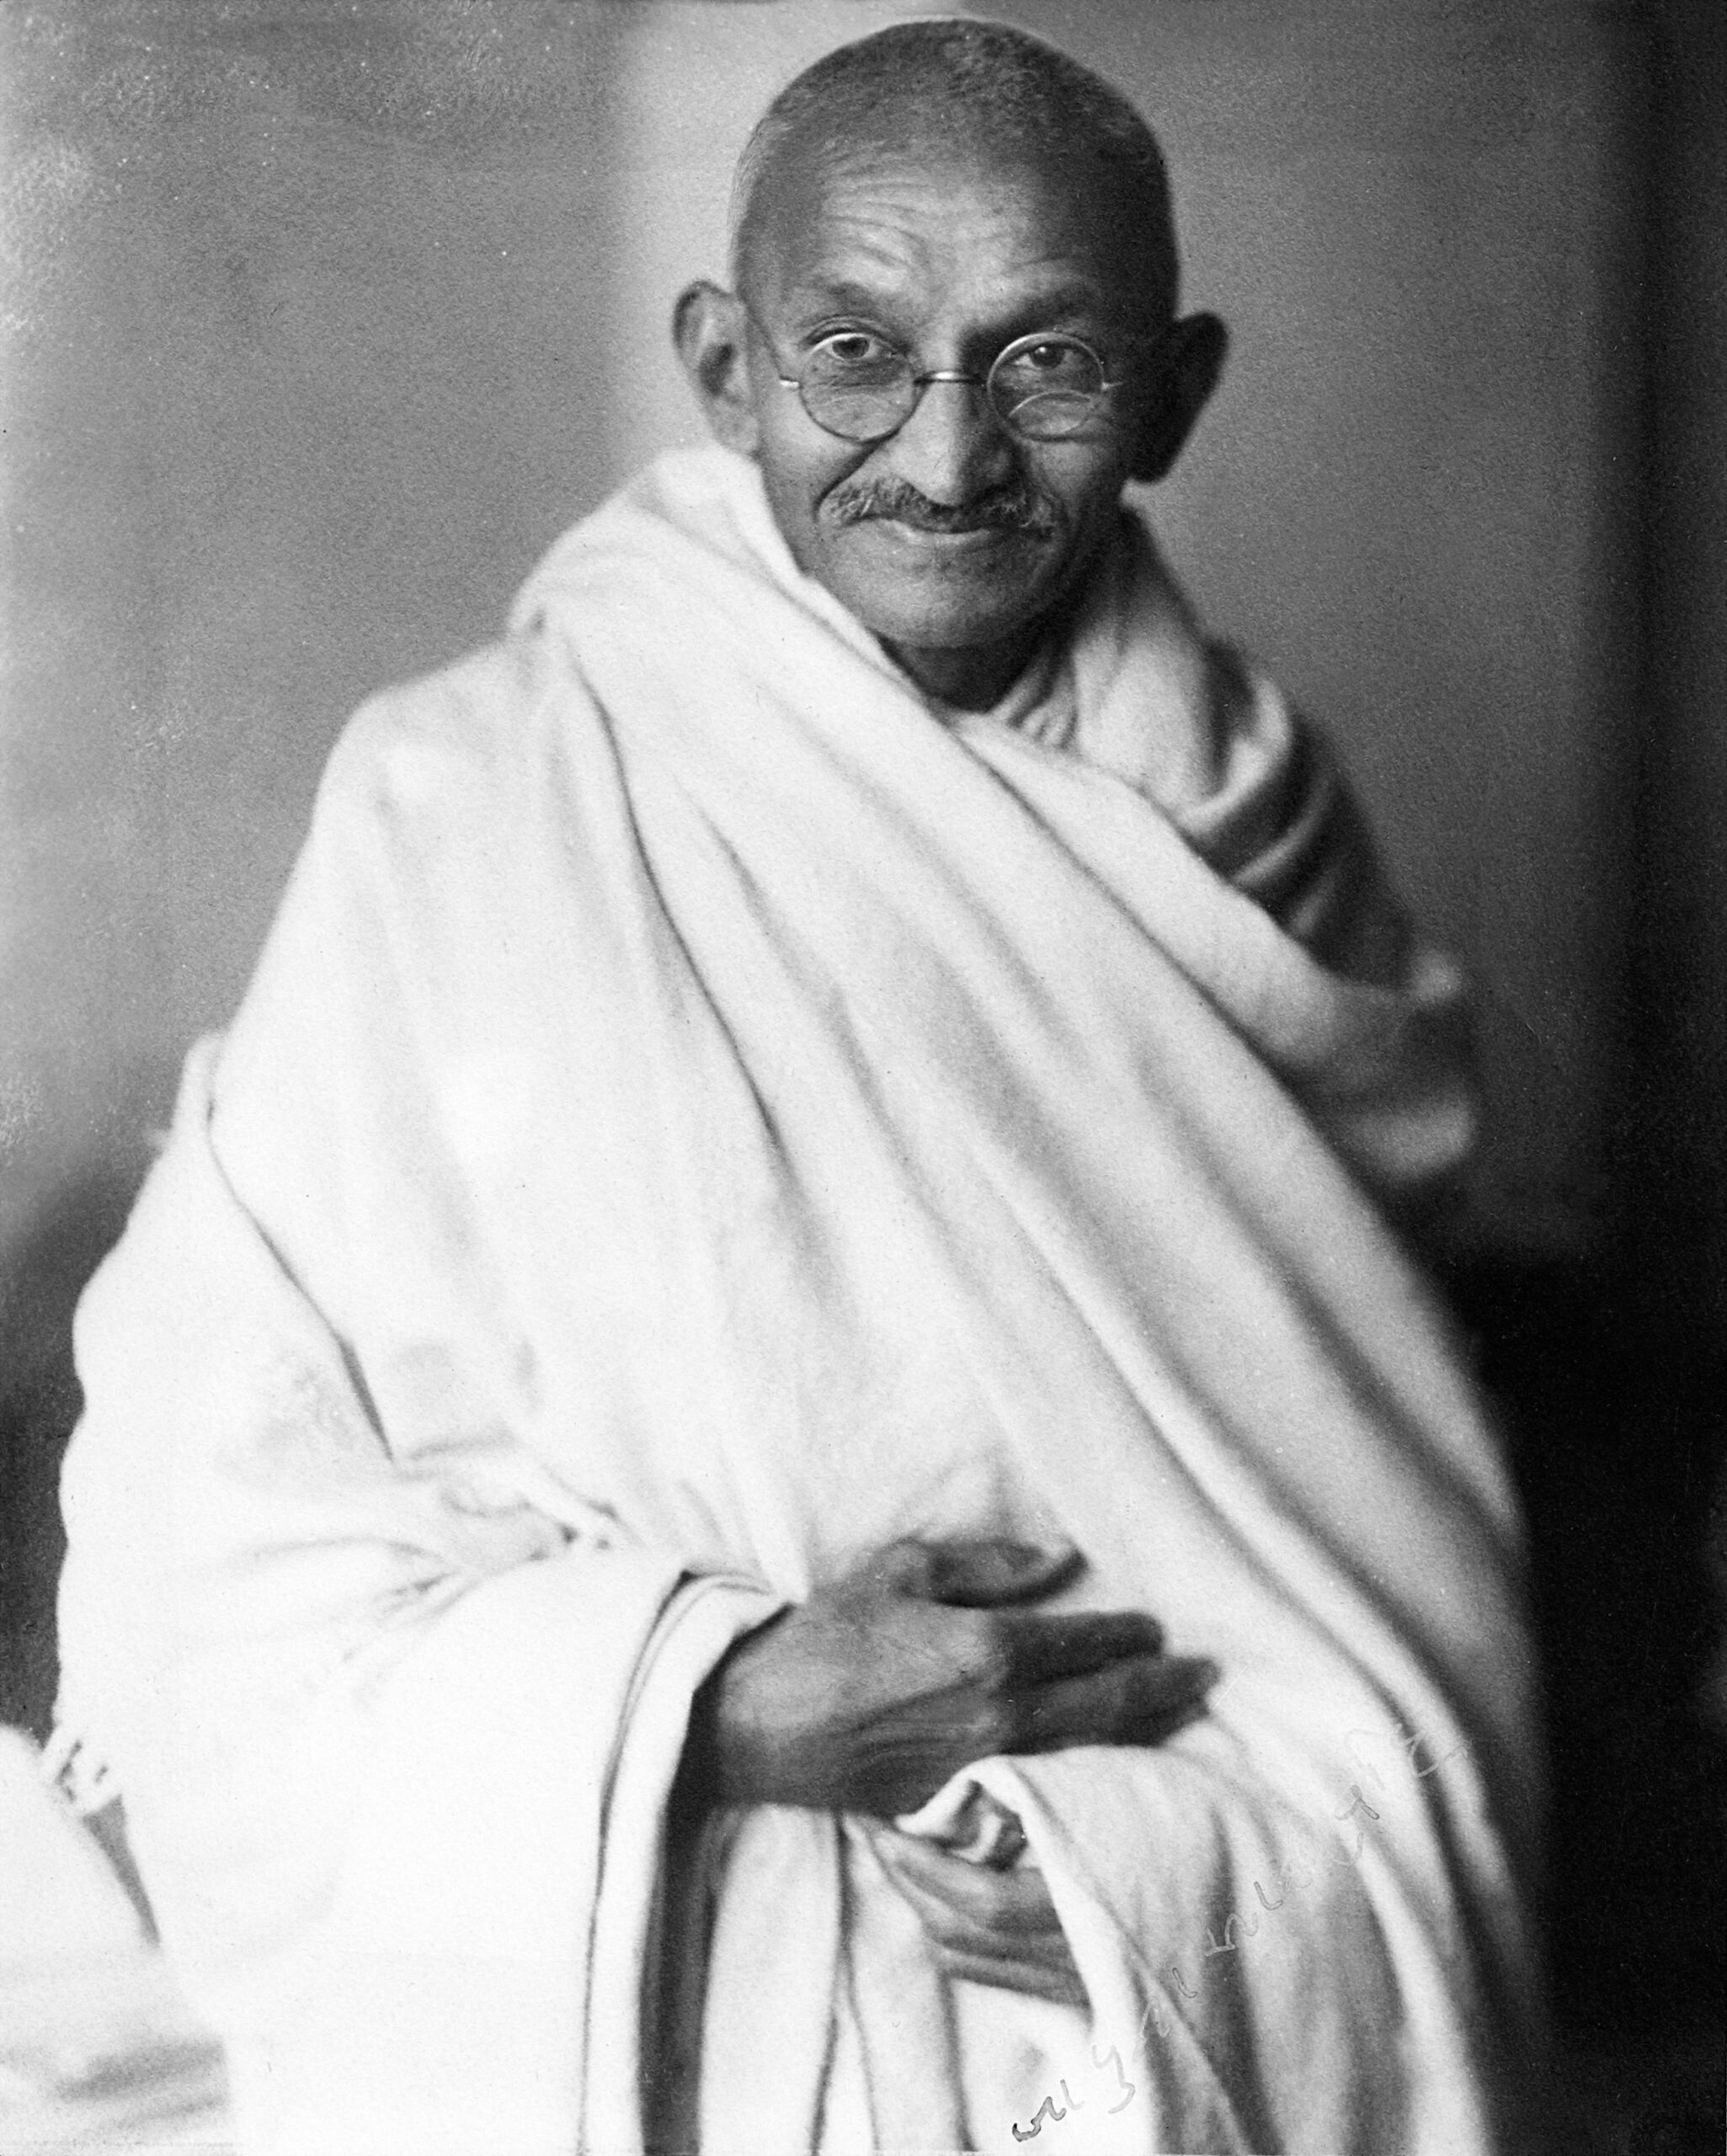 Image of Gandhi, London 1931